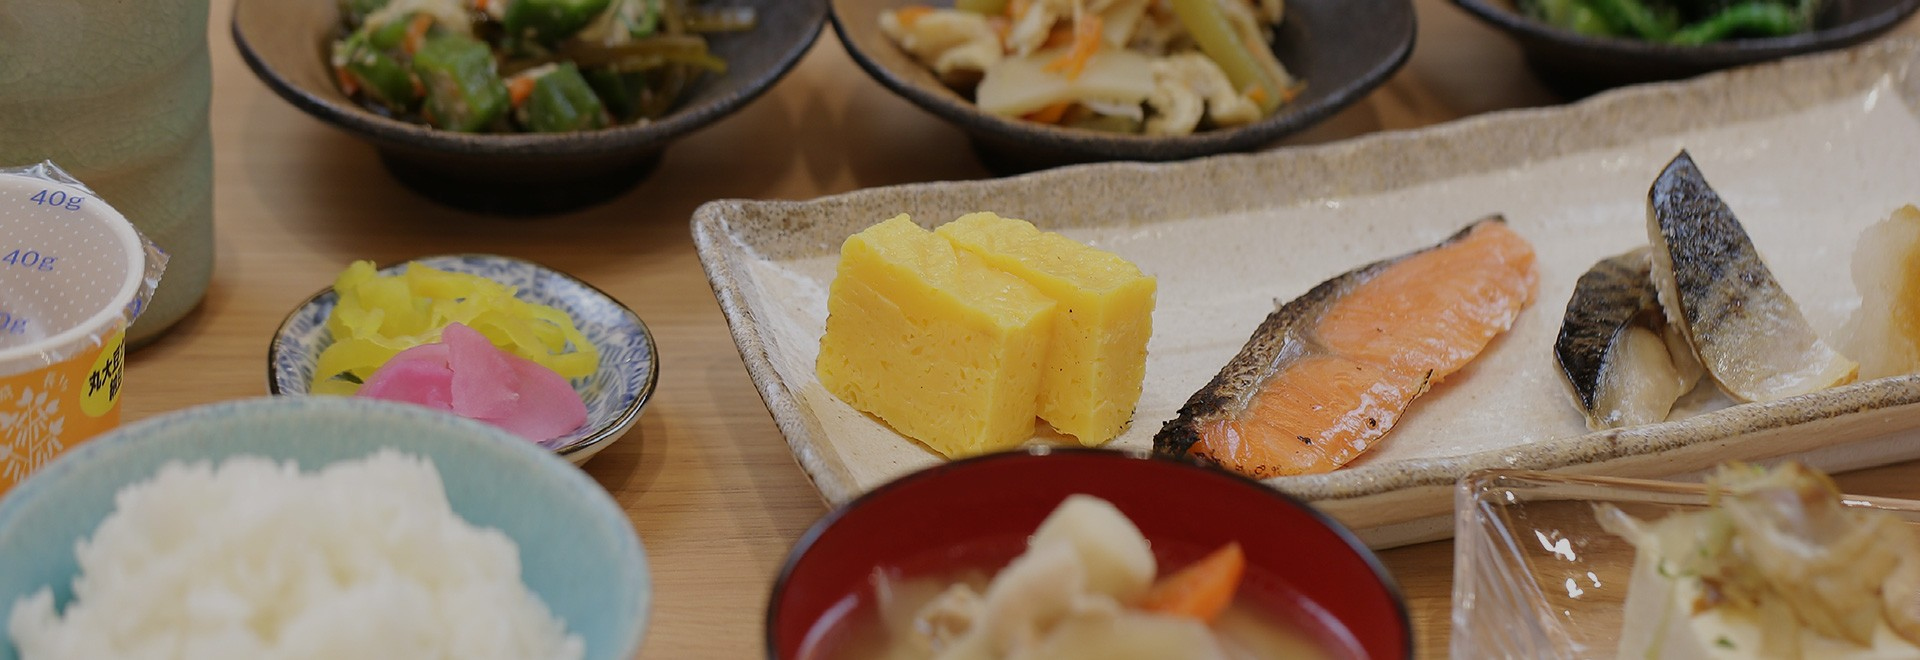 멋진 하루의 시작으로, 특선 일본식 찬거리를 중심으로 구성된 조식 맛보세요.